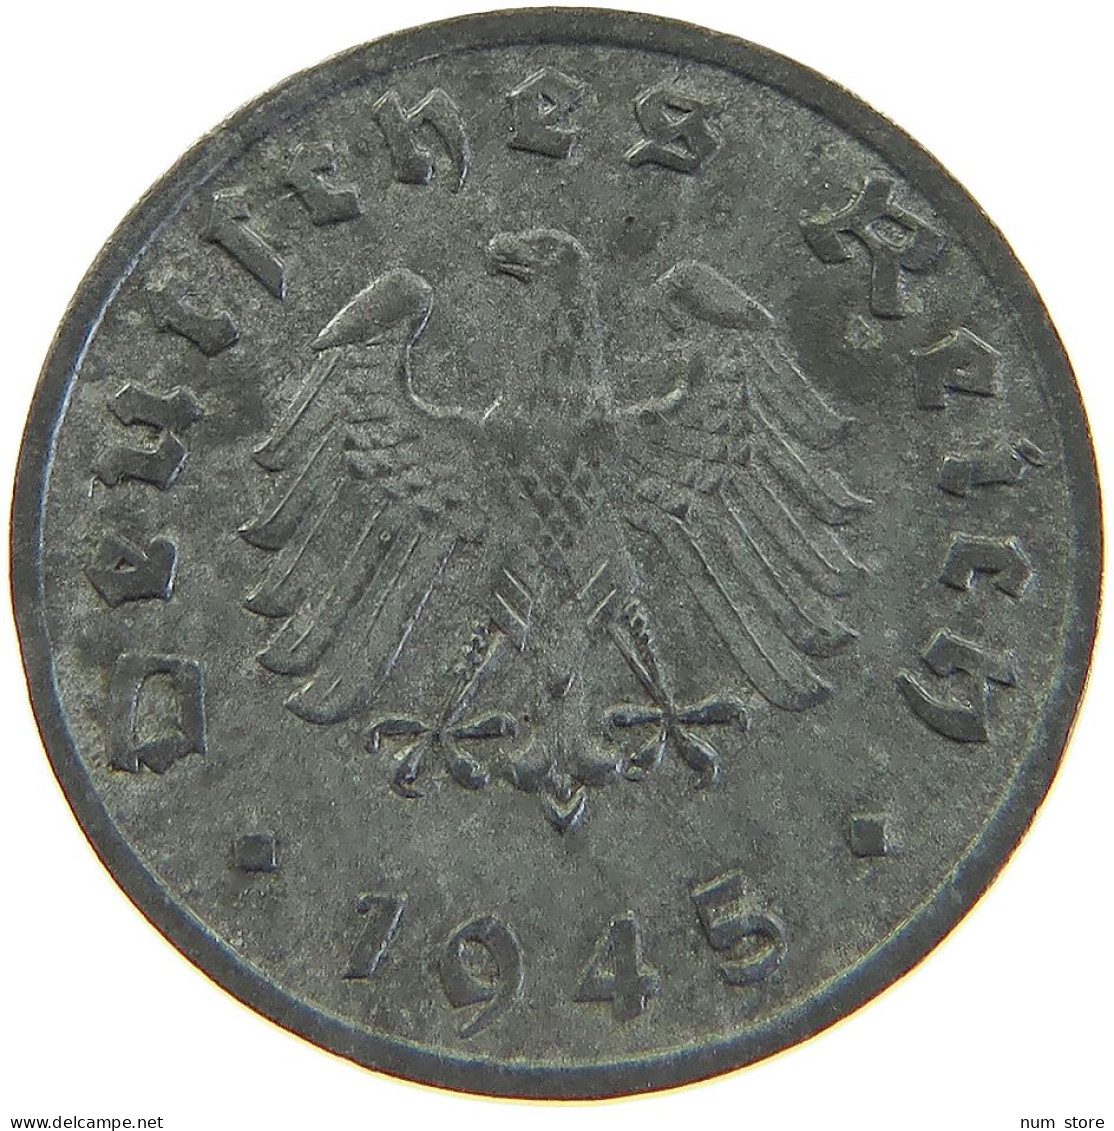 ALLIIERTE BESETZUNG REICHSPFENNIG 1945 F  #MA 102788 - 1 Reichspfennig